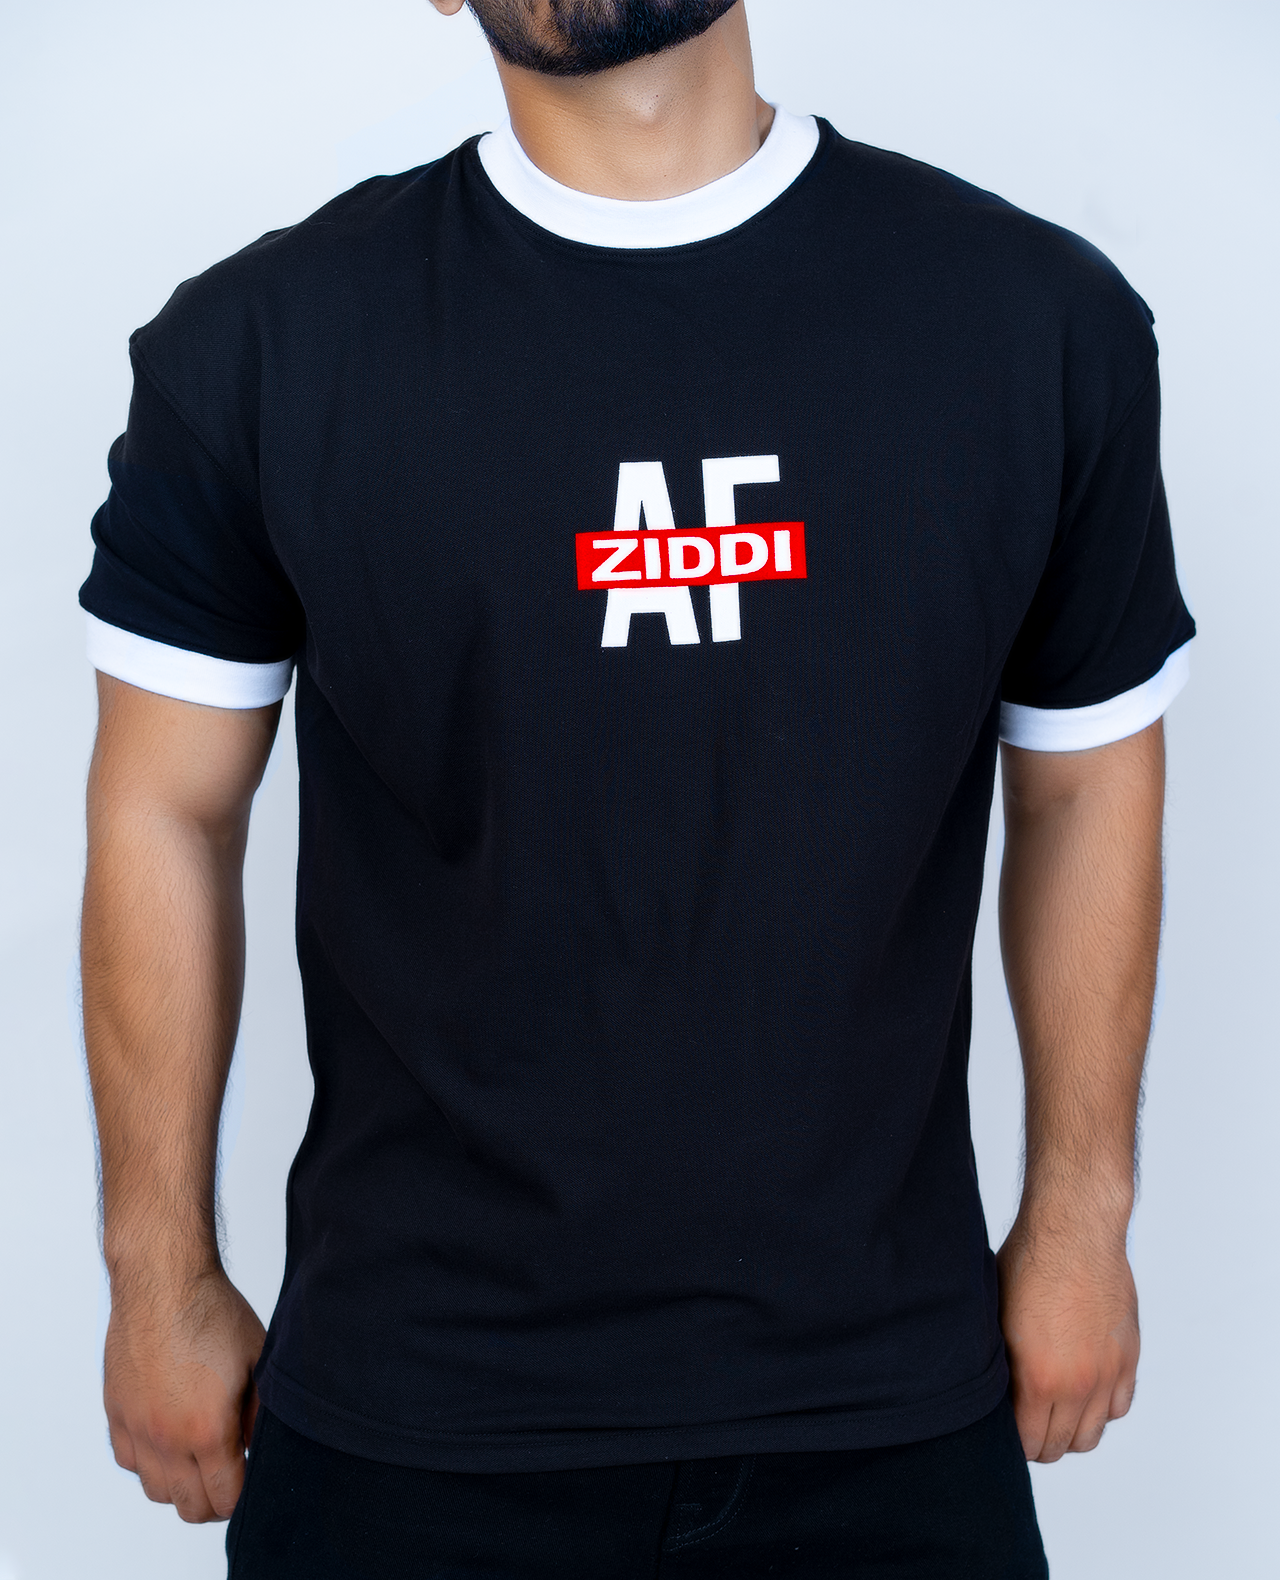 Ziddi AF Black T-shirt